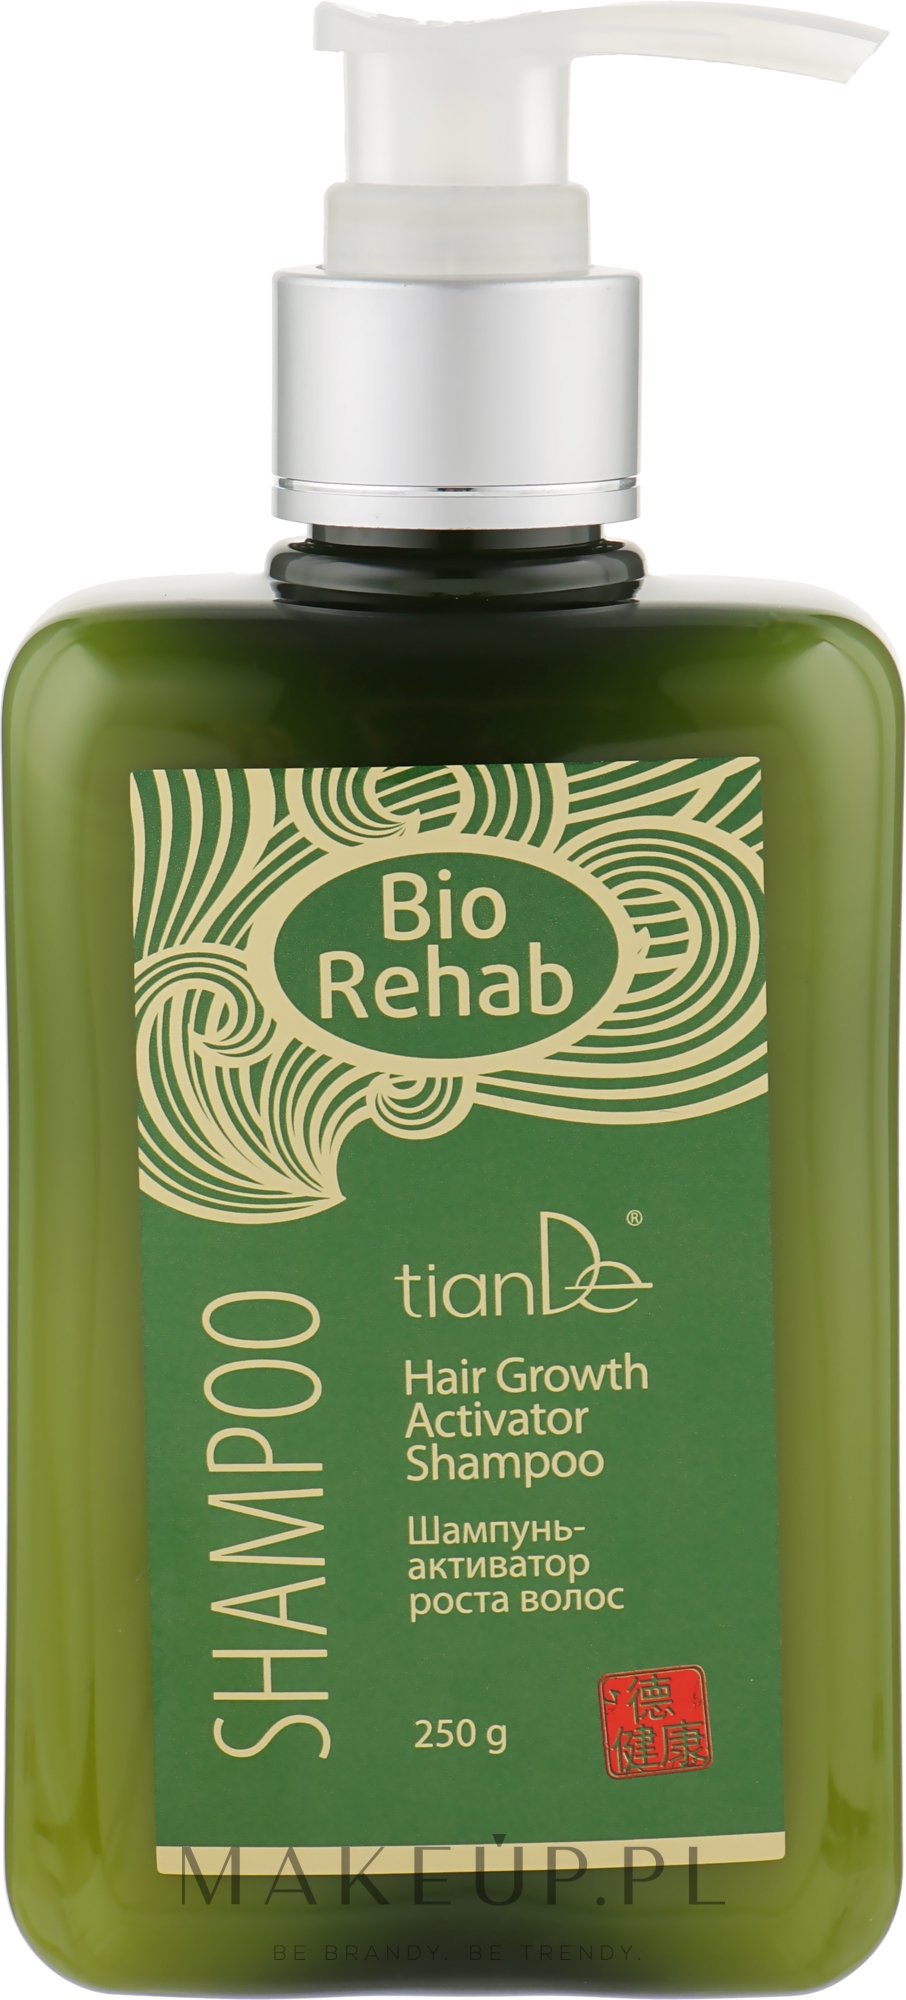 bio rehab szampon opinie